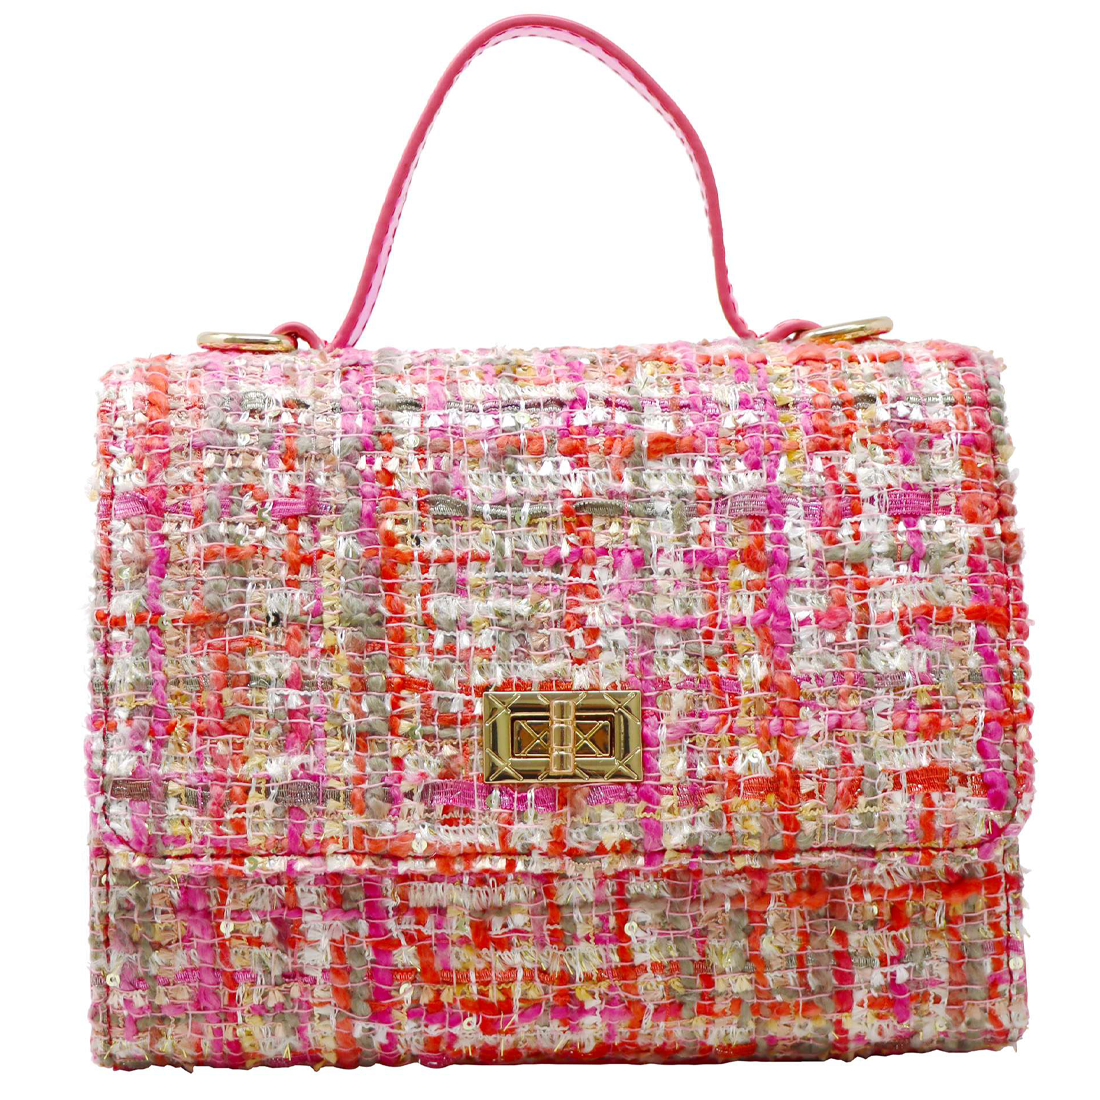 Pink Tweed Handbag